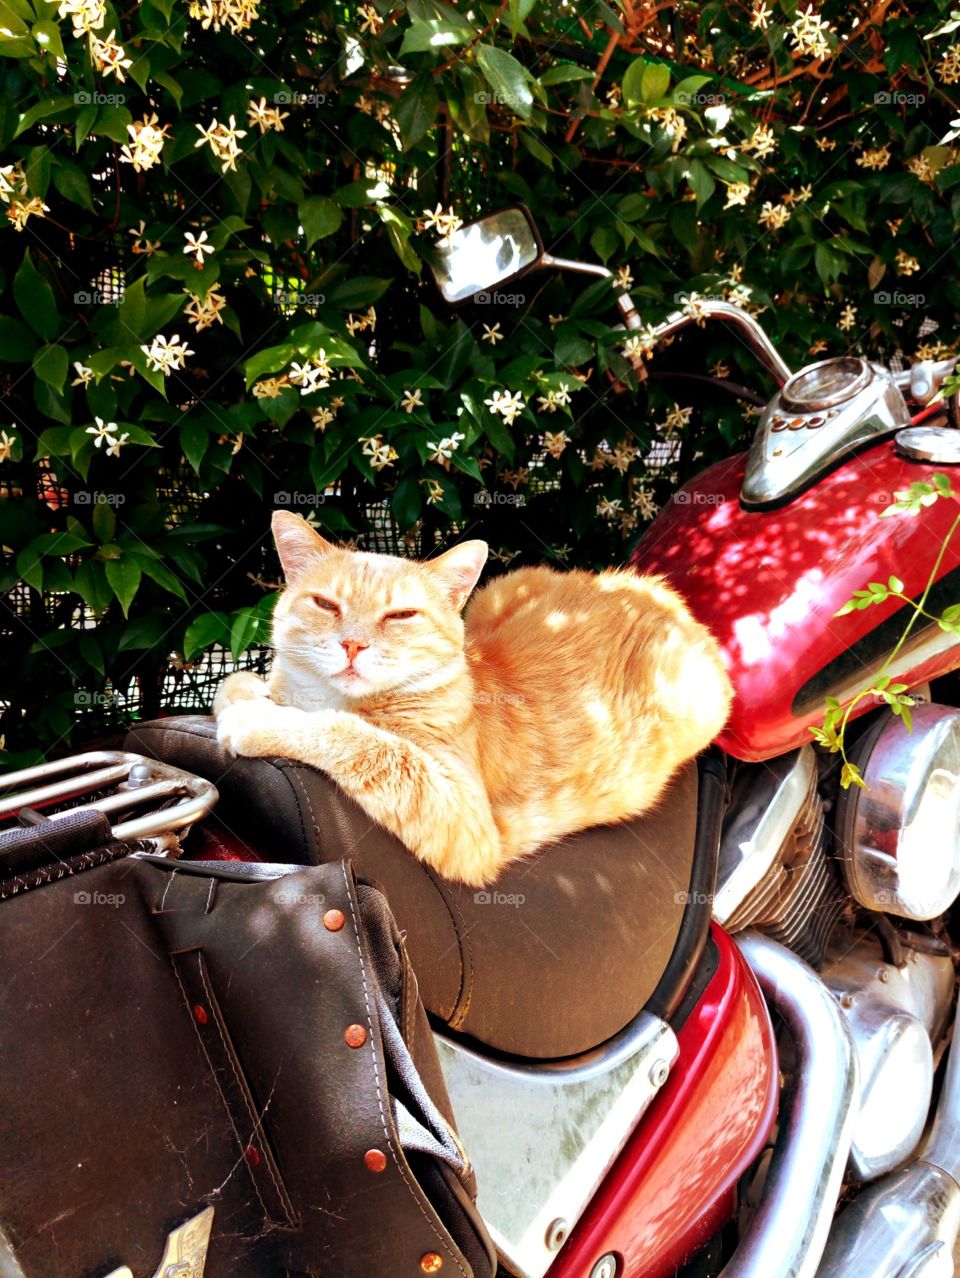 easy rider cat